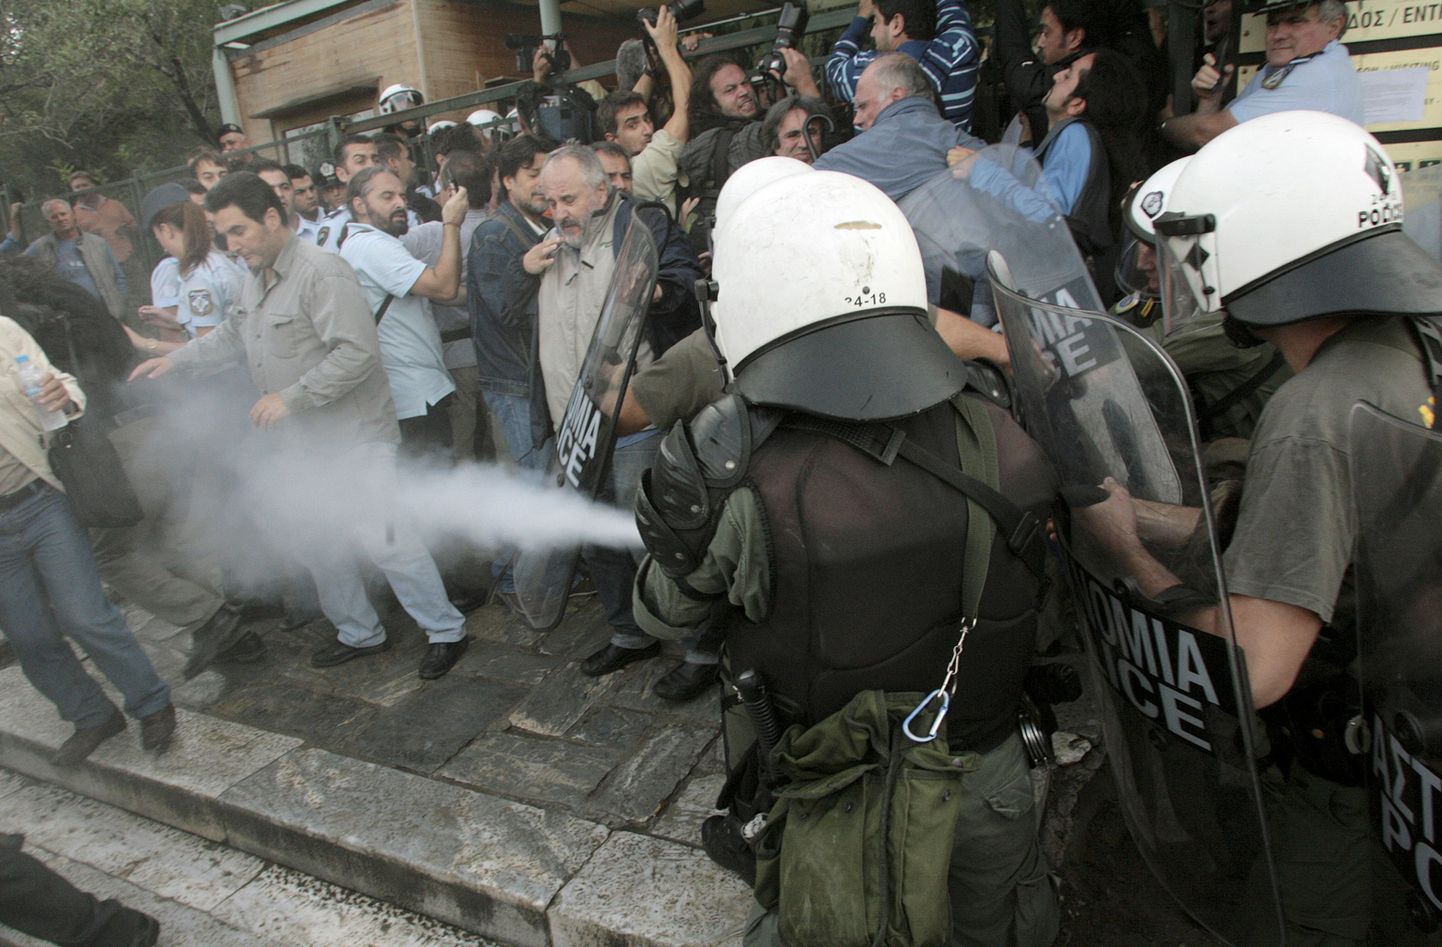 Politsei kasutab pisargaasi Akropoli mäel protestivate meeleavaldajate vastu.